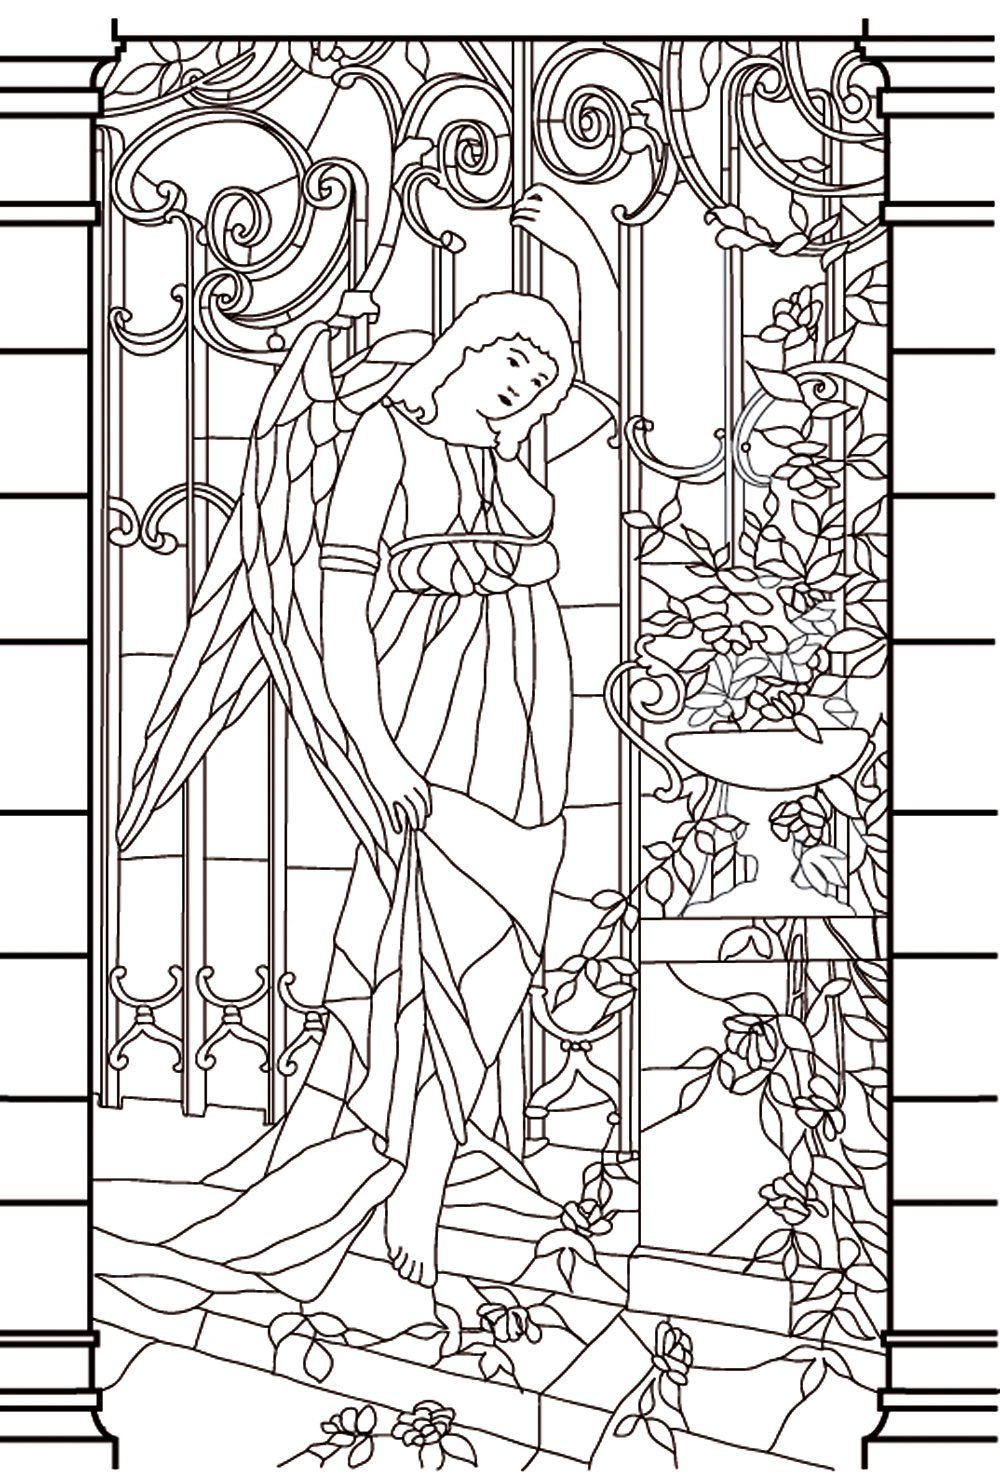 Dibujo (vidriera) de una diosa de aspecto melancólico, para imprimir y colorear